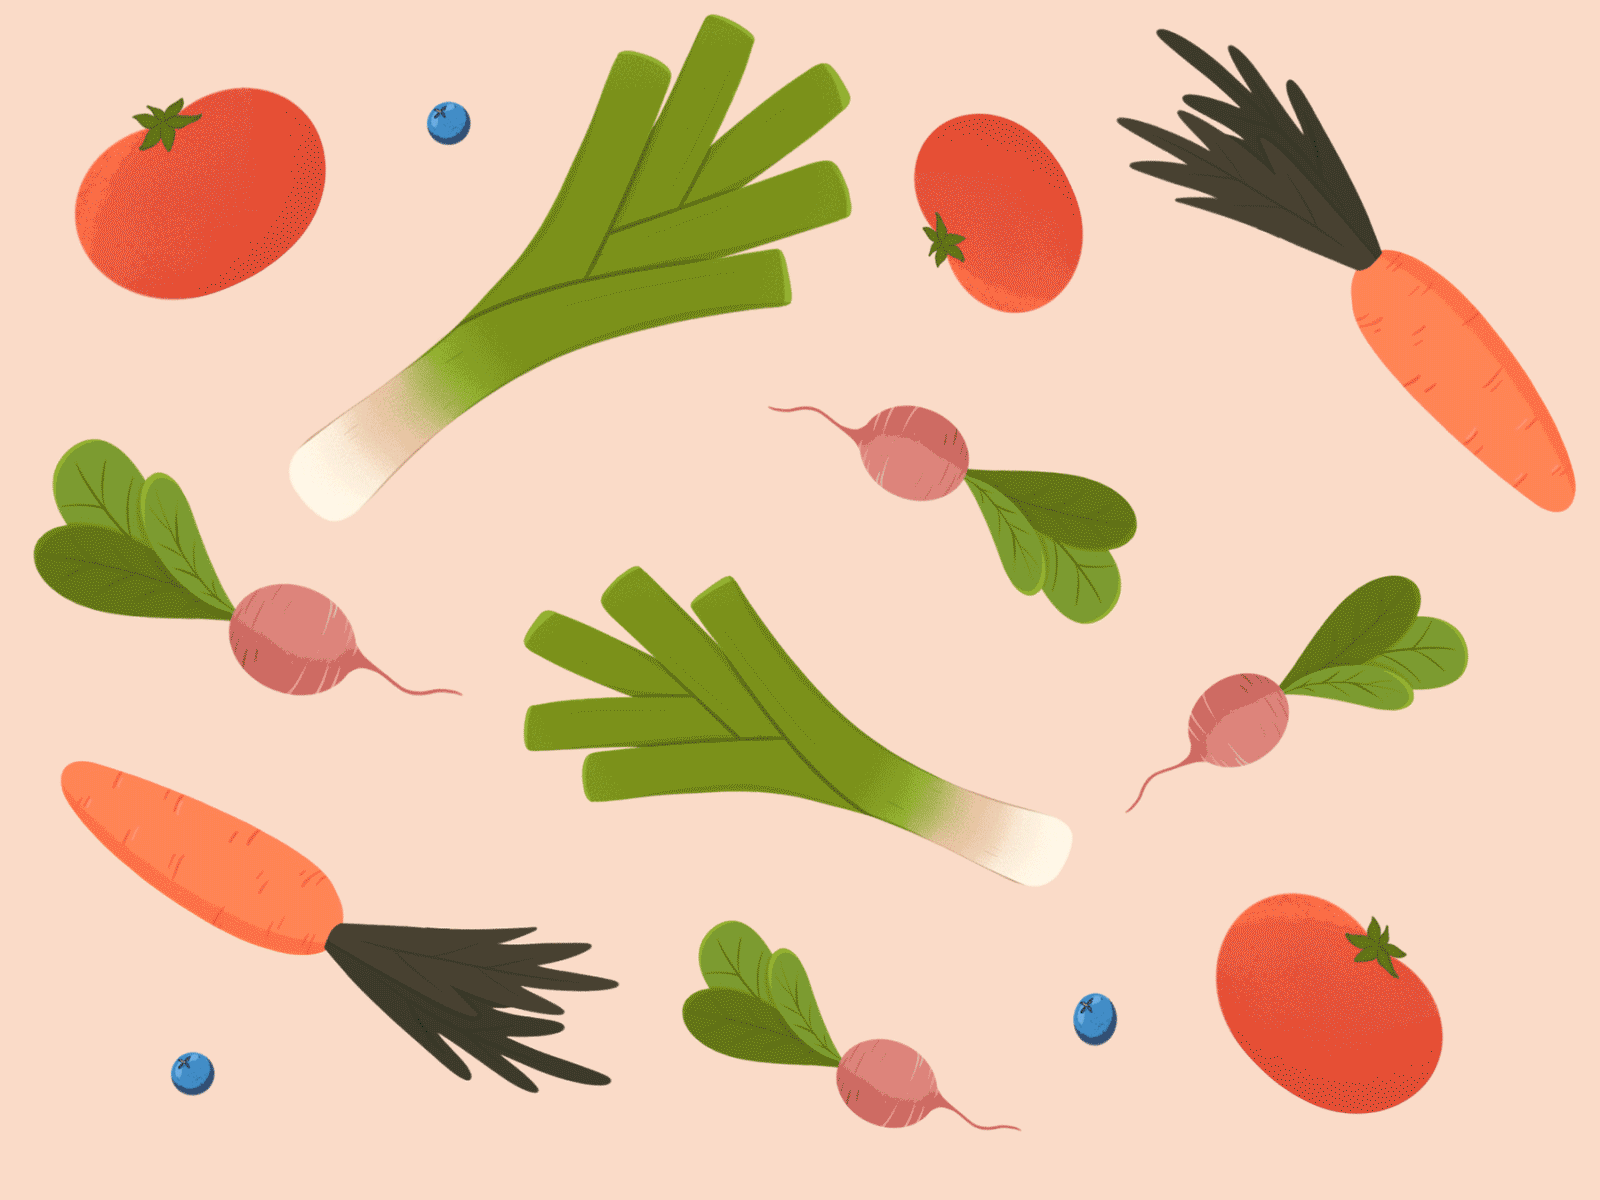 Vegetables animation berry carrot illustration leek redish tomato vegetables